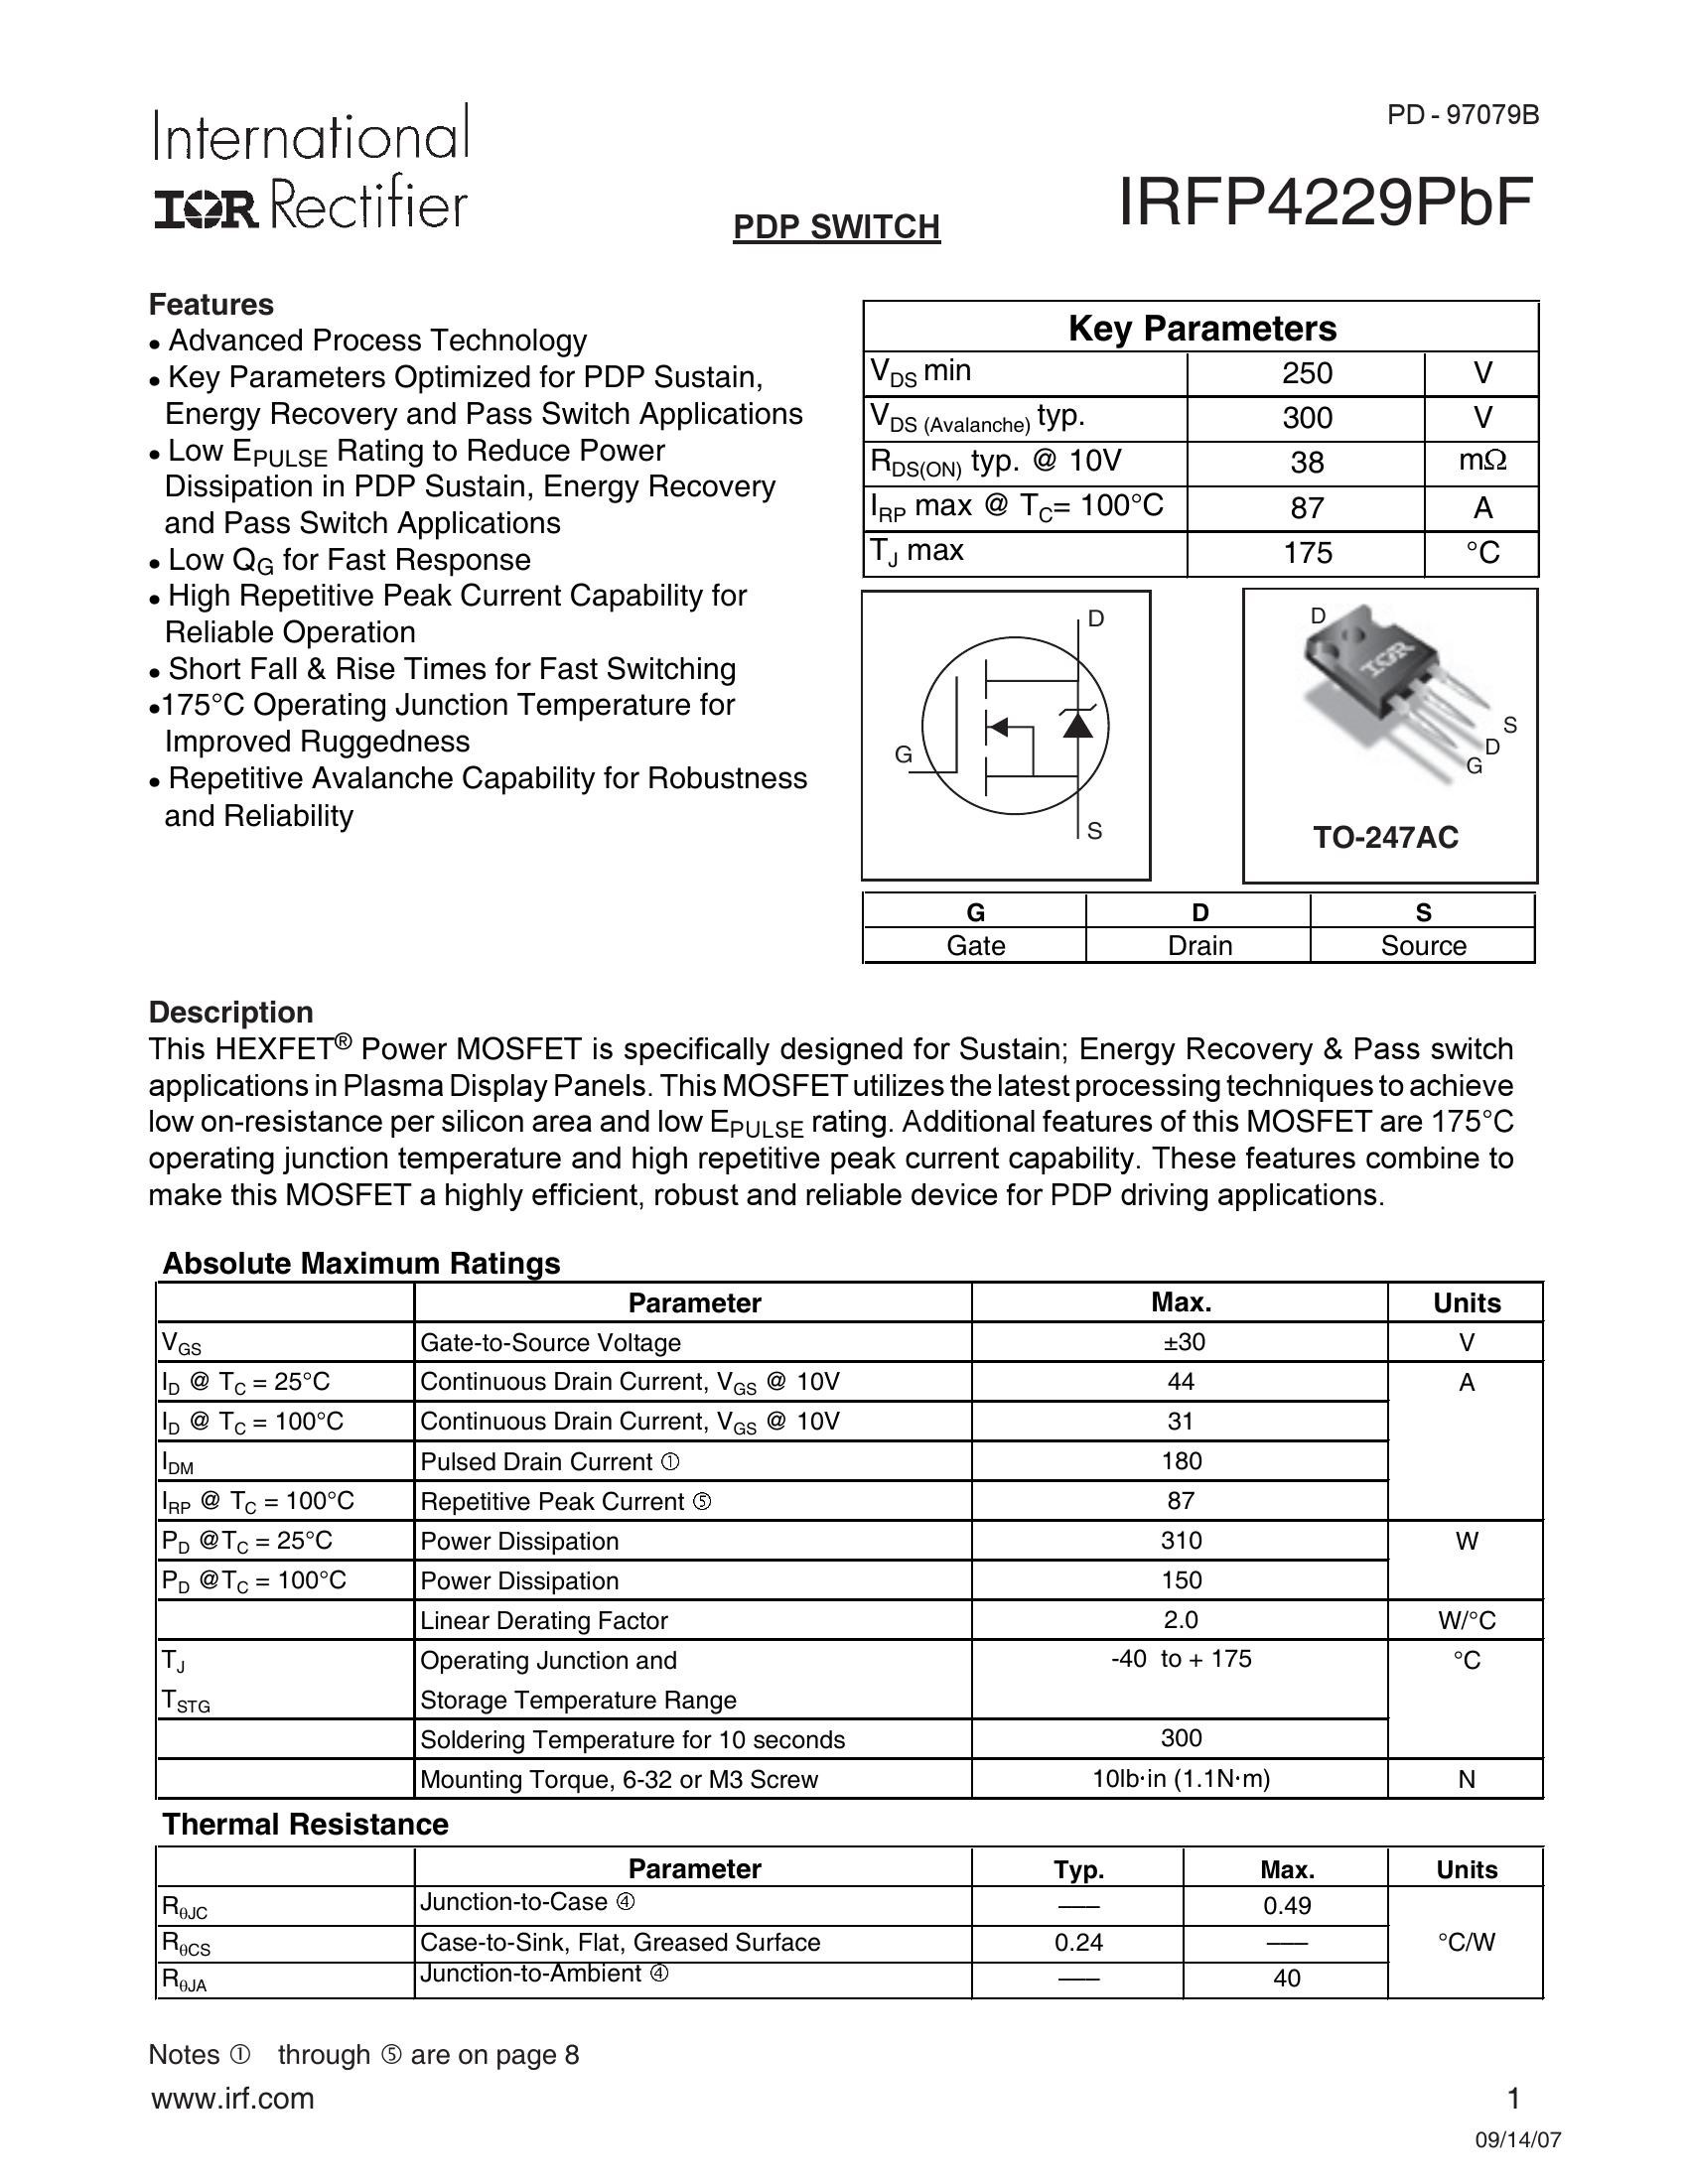 IRFP4004 Datasheet PDF MOSFETs - AiEMA